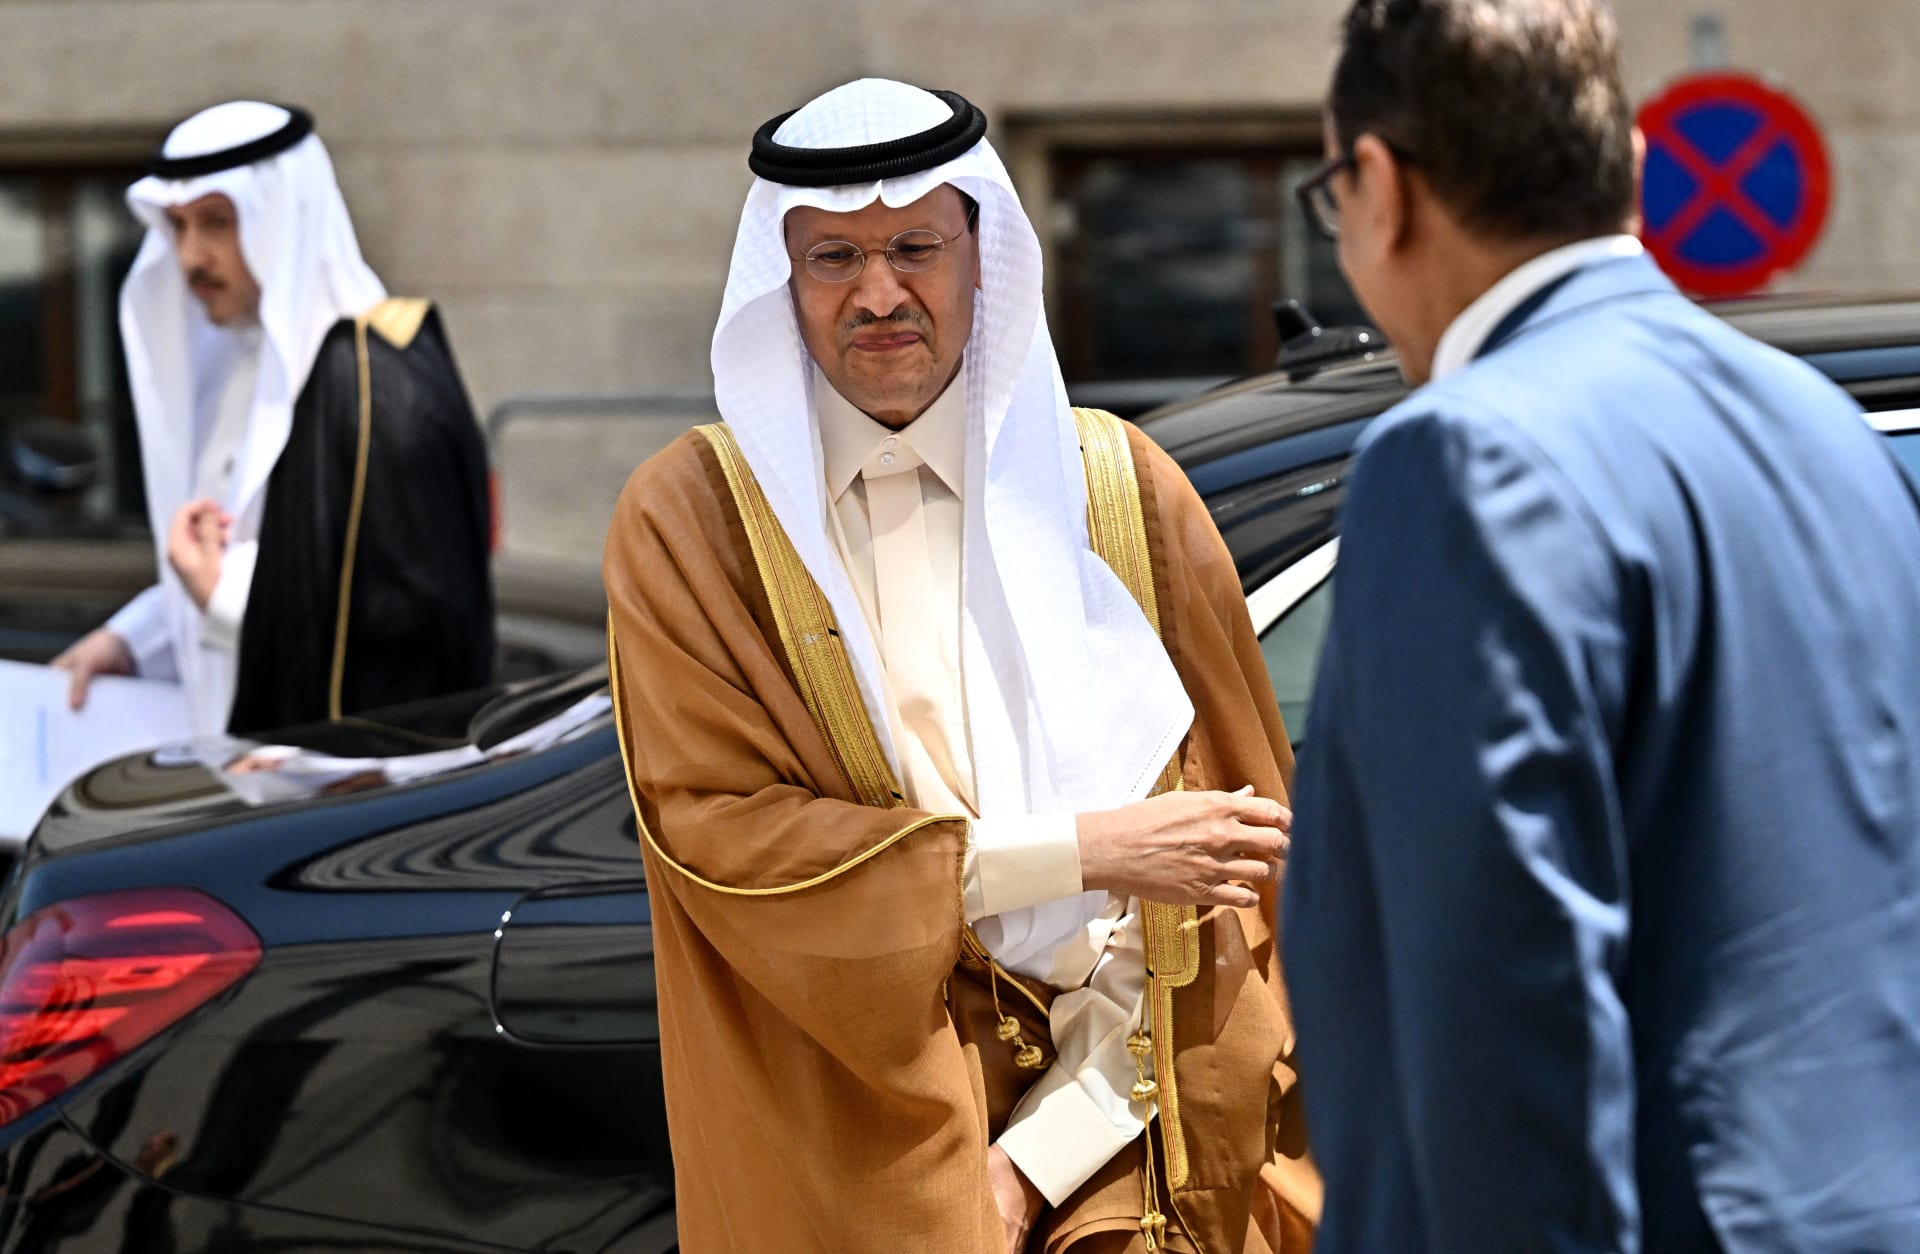  مستشار الأمن القومي الأمريكي يعلق على تمديد السعودية خفض انتاج النفط